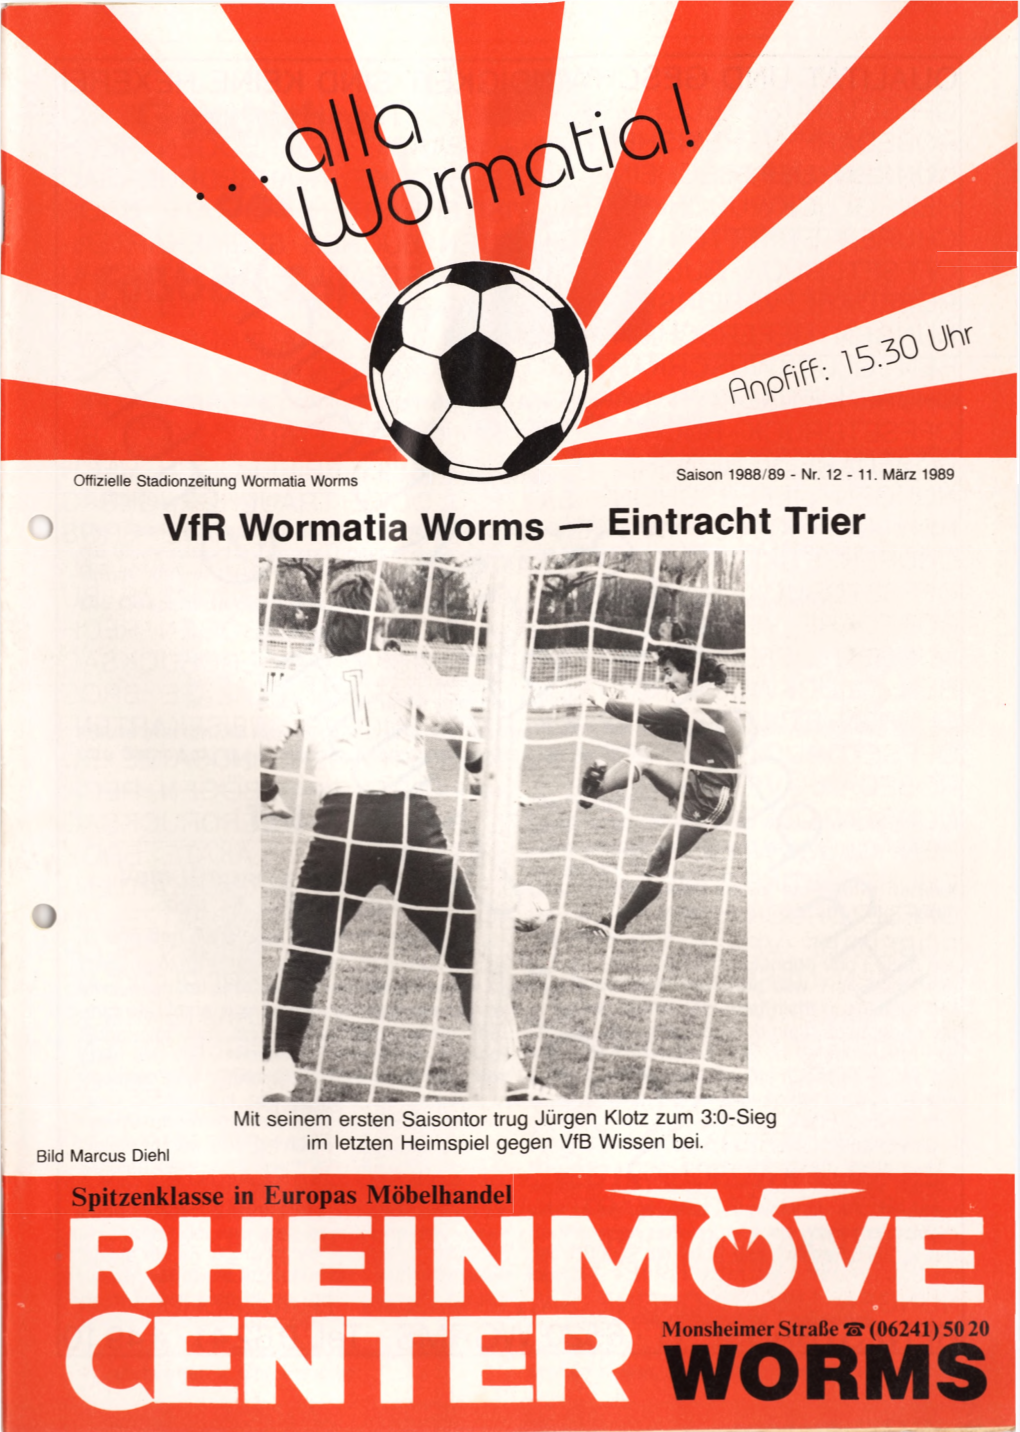 Vfr Wormatia Worms — Eintracht Trier